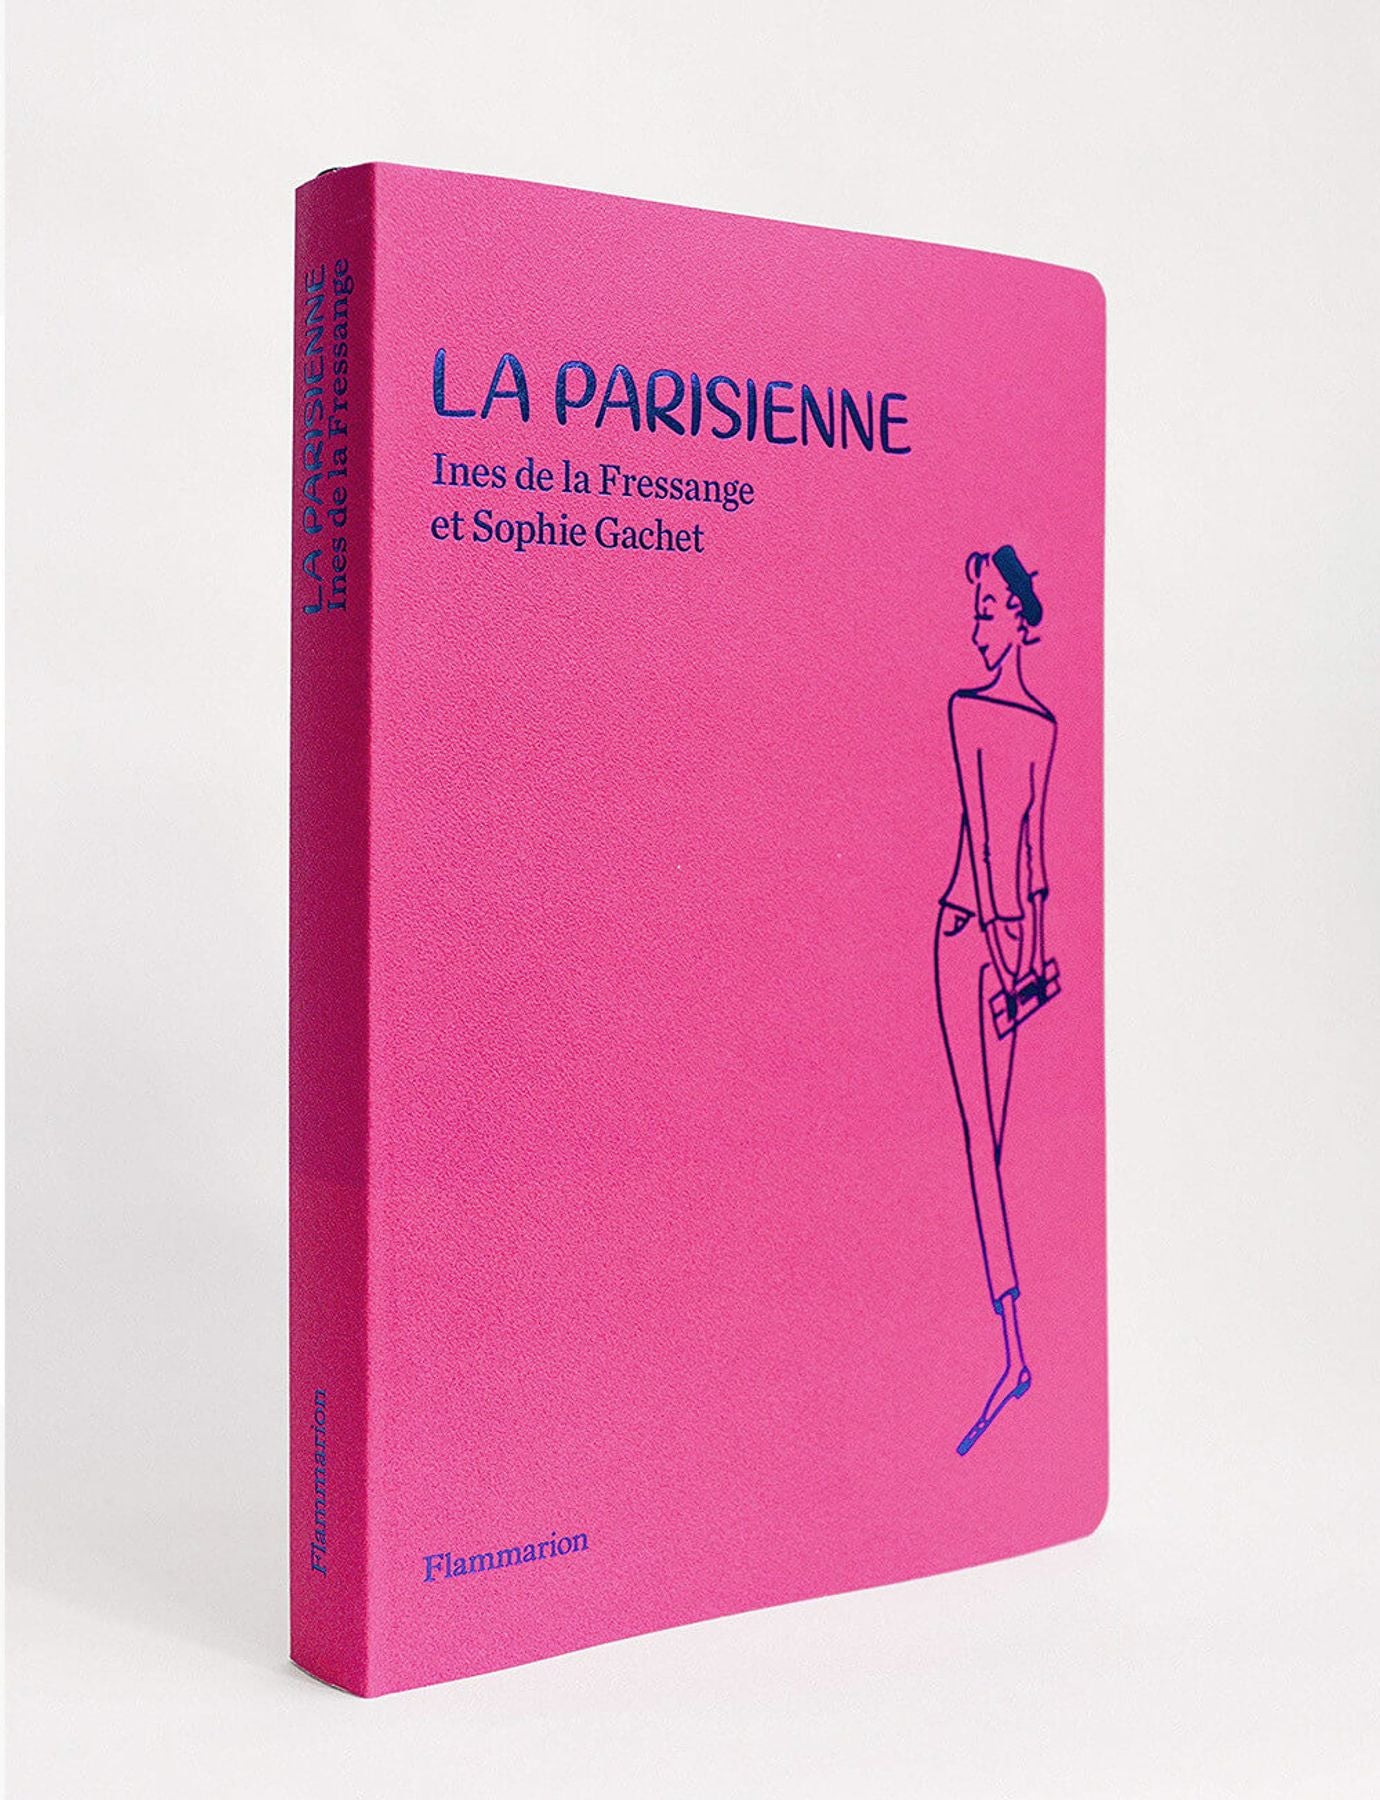 La Parisienne FR new edition 2019 - Ines de la Fressange Paris